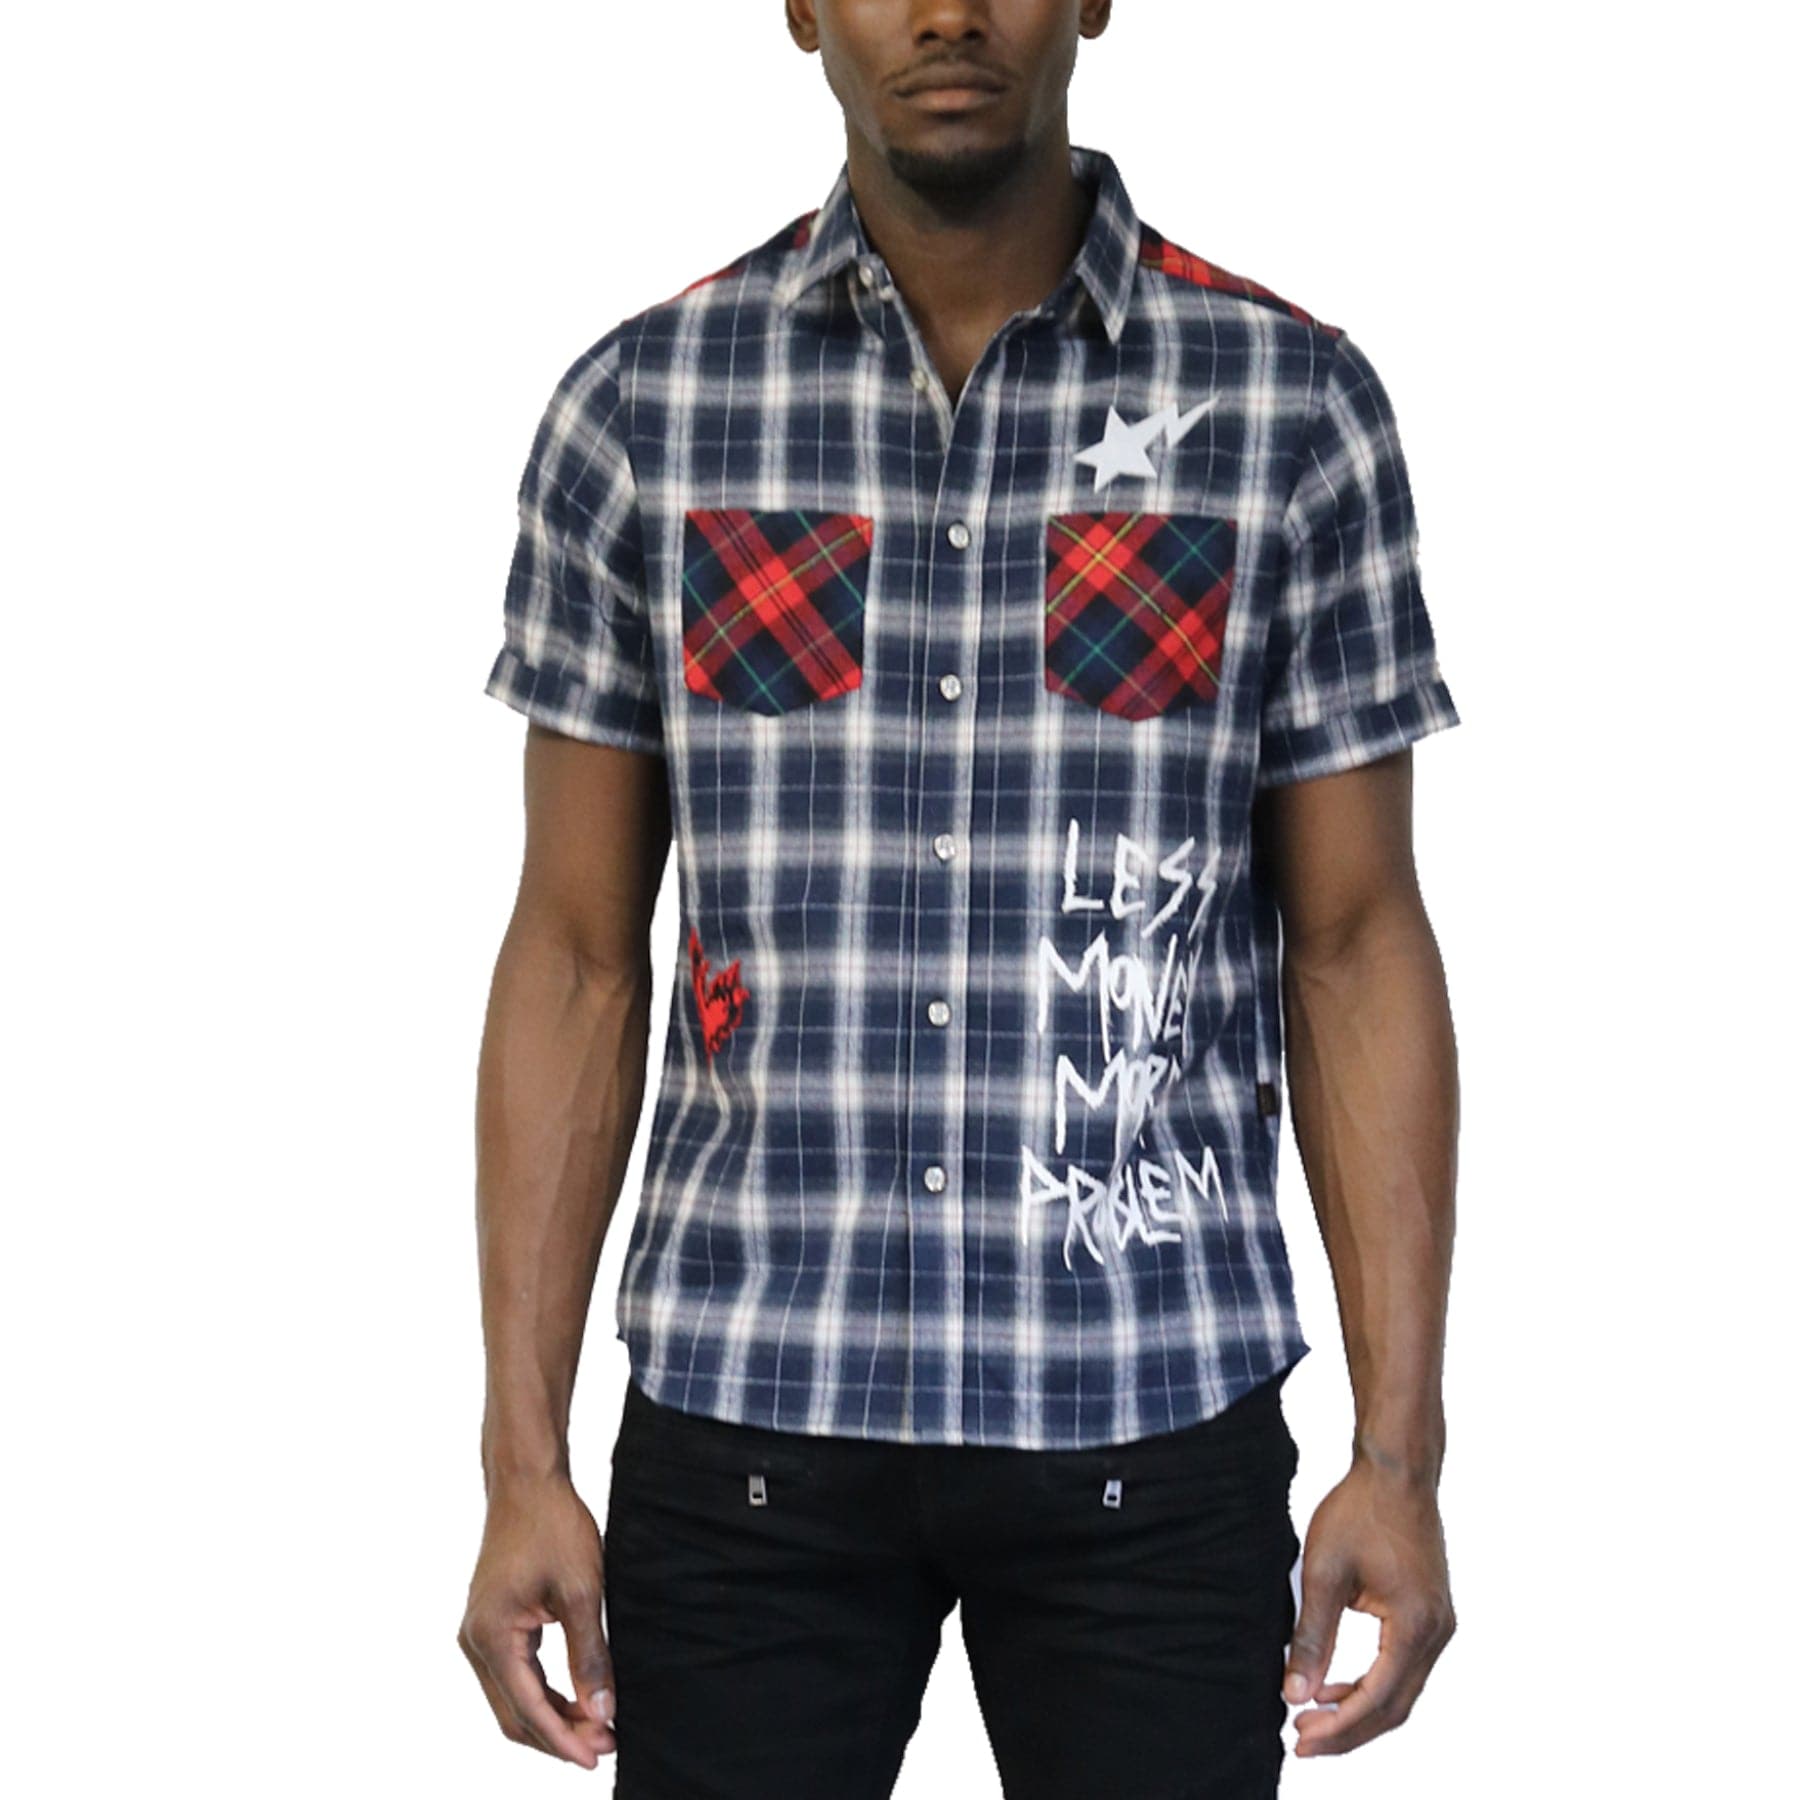 KLEEP Men's Shirt CAPUT Men's Premium Short Sleeve Button-down Shirt